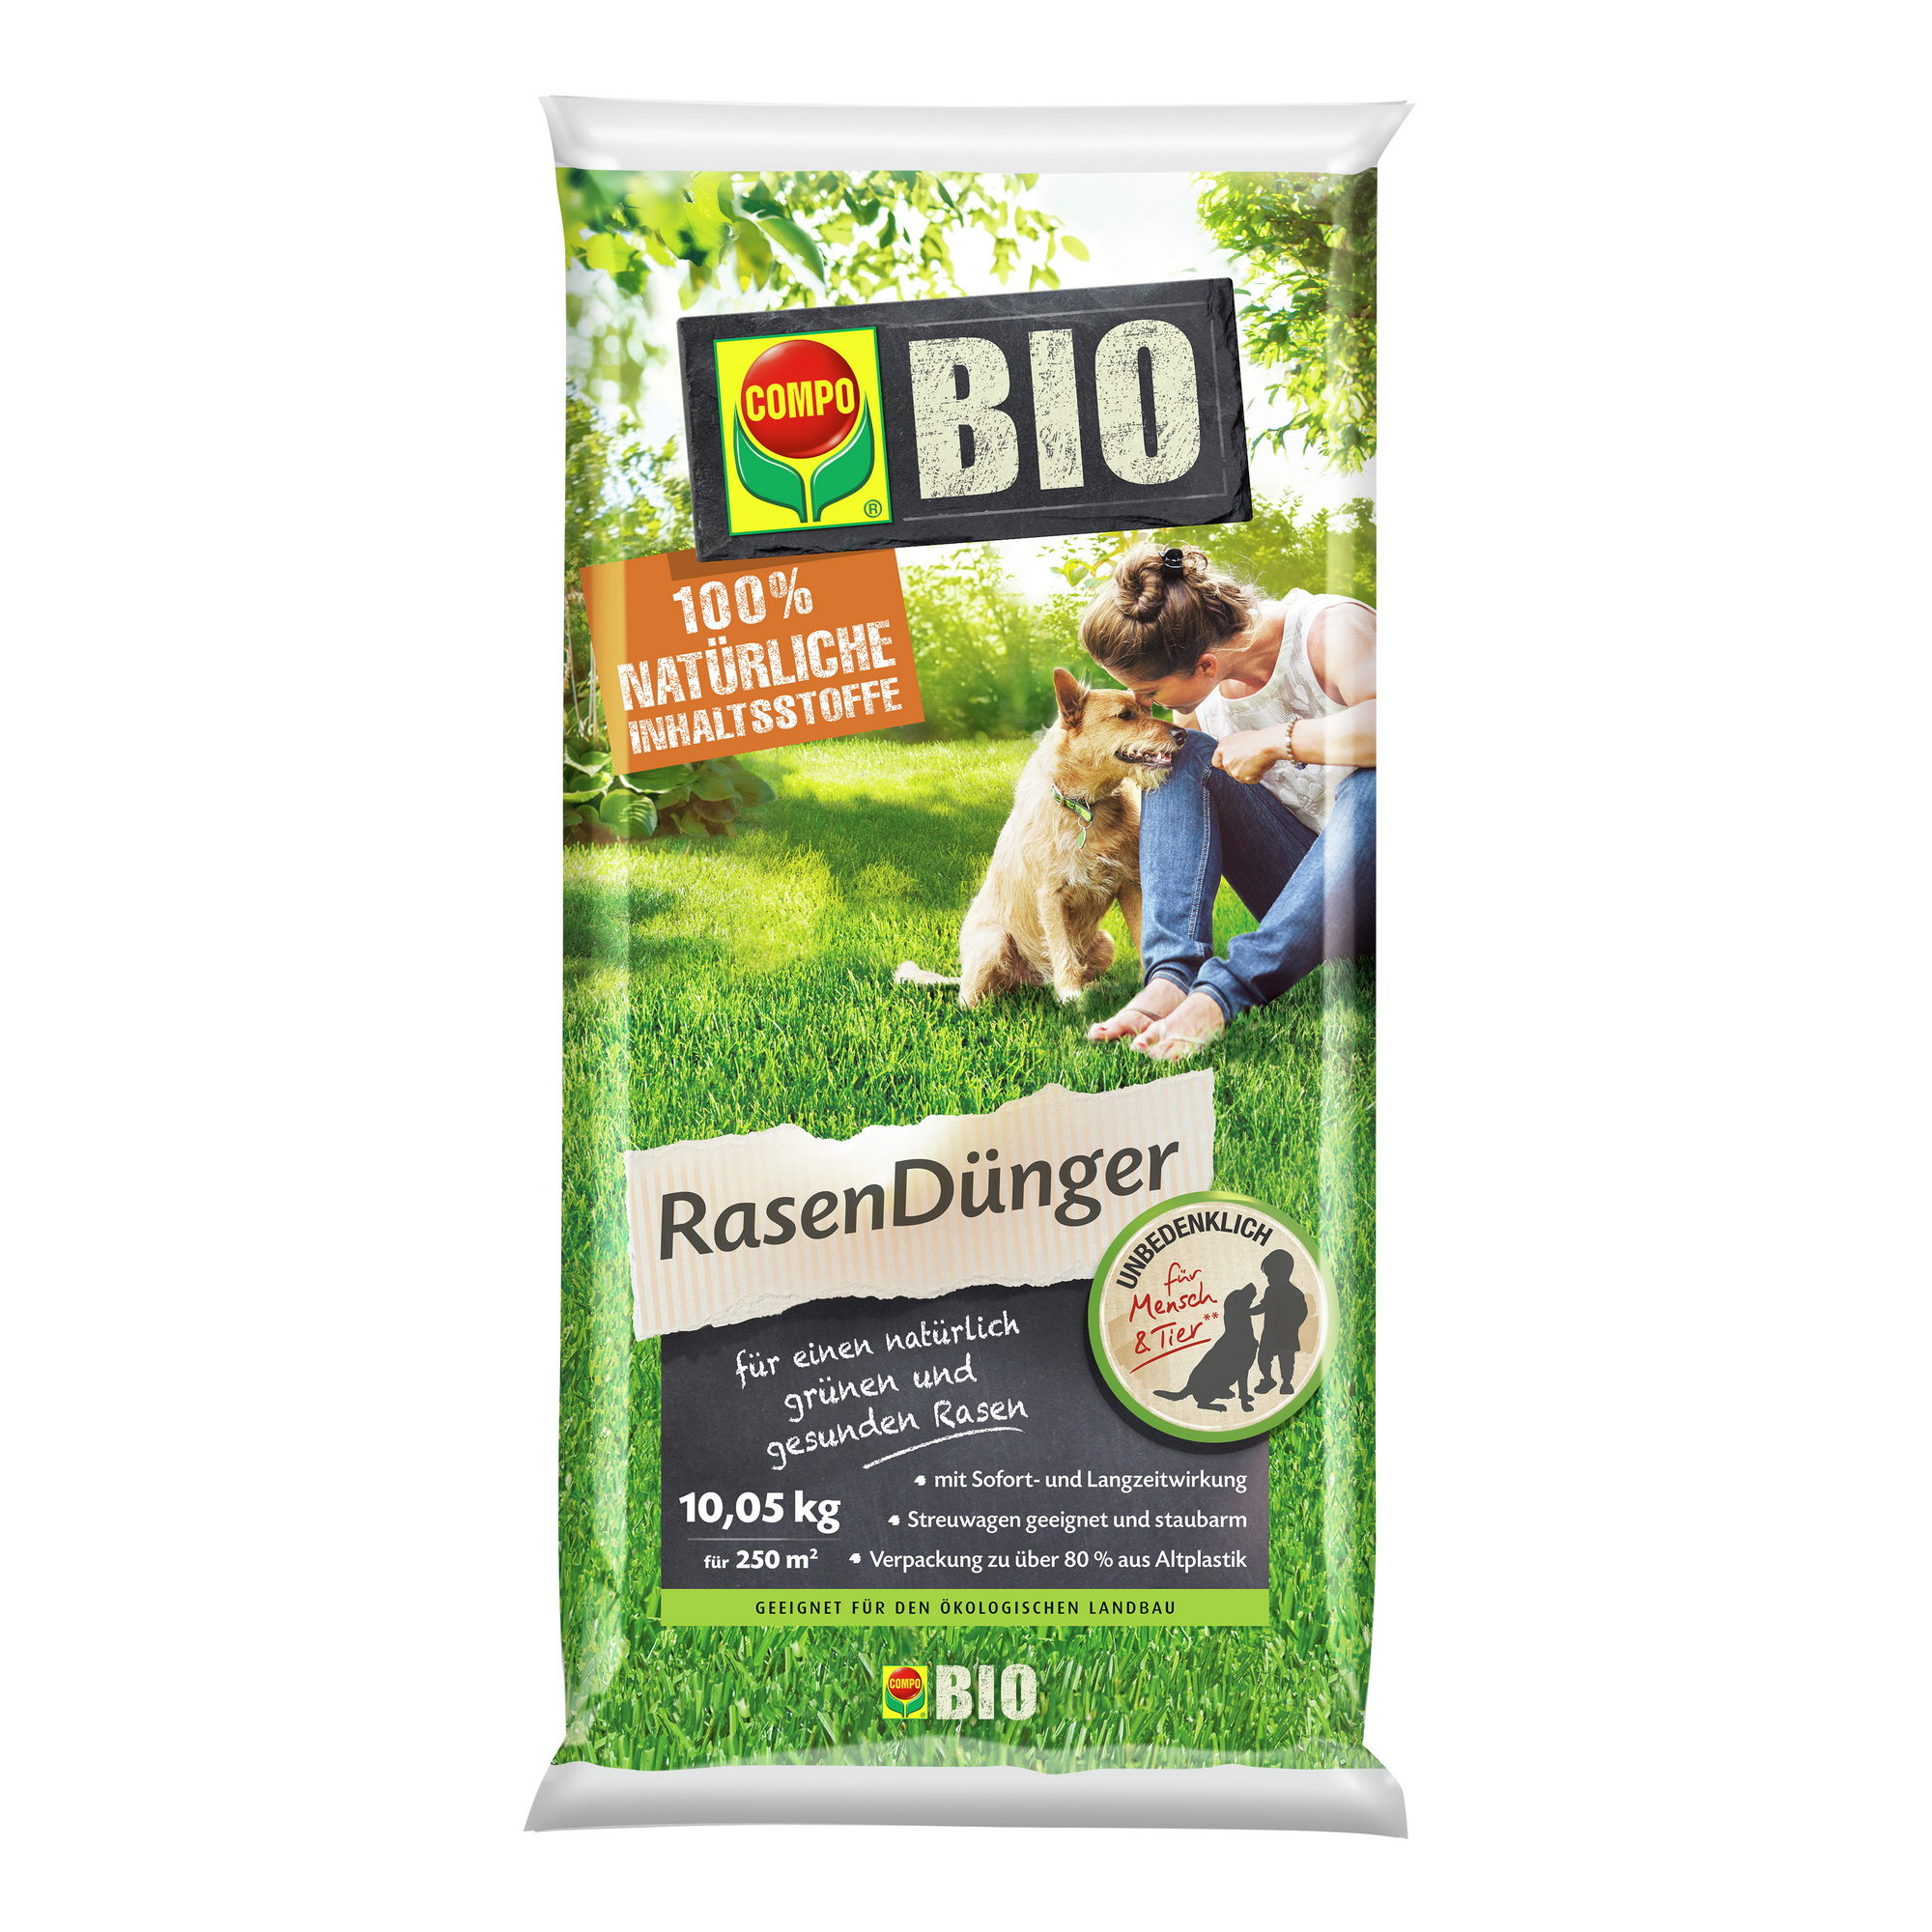 Bio-Rasendünger 10,05 kg für 250 m² + product picture